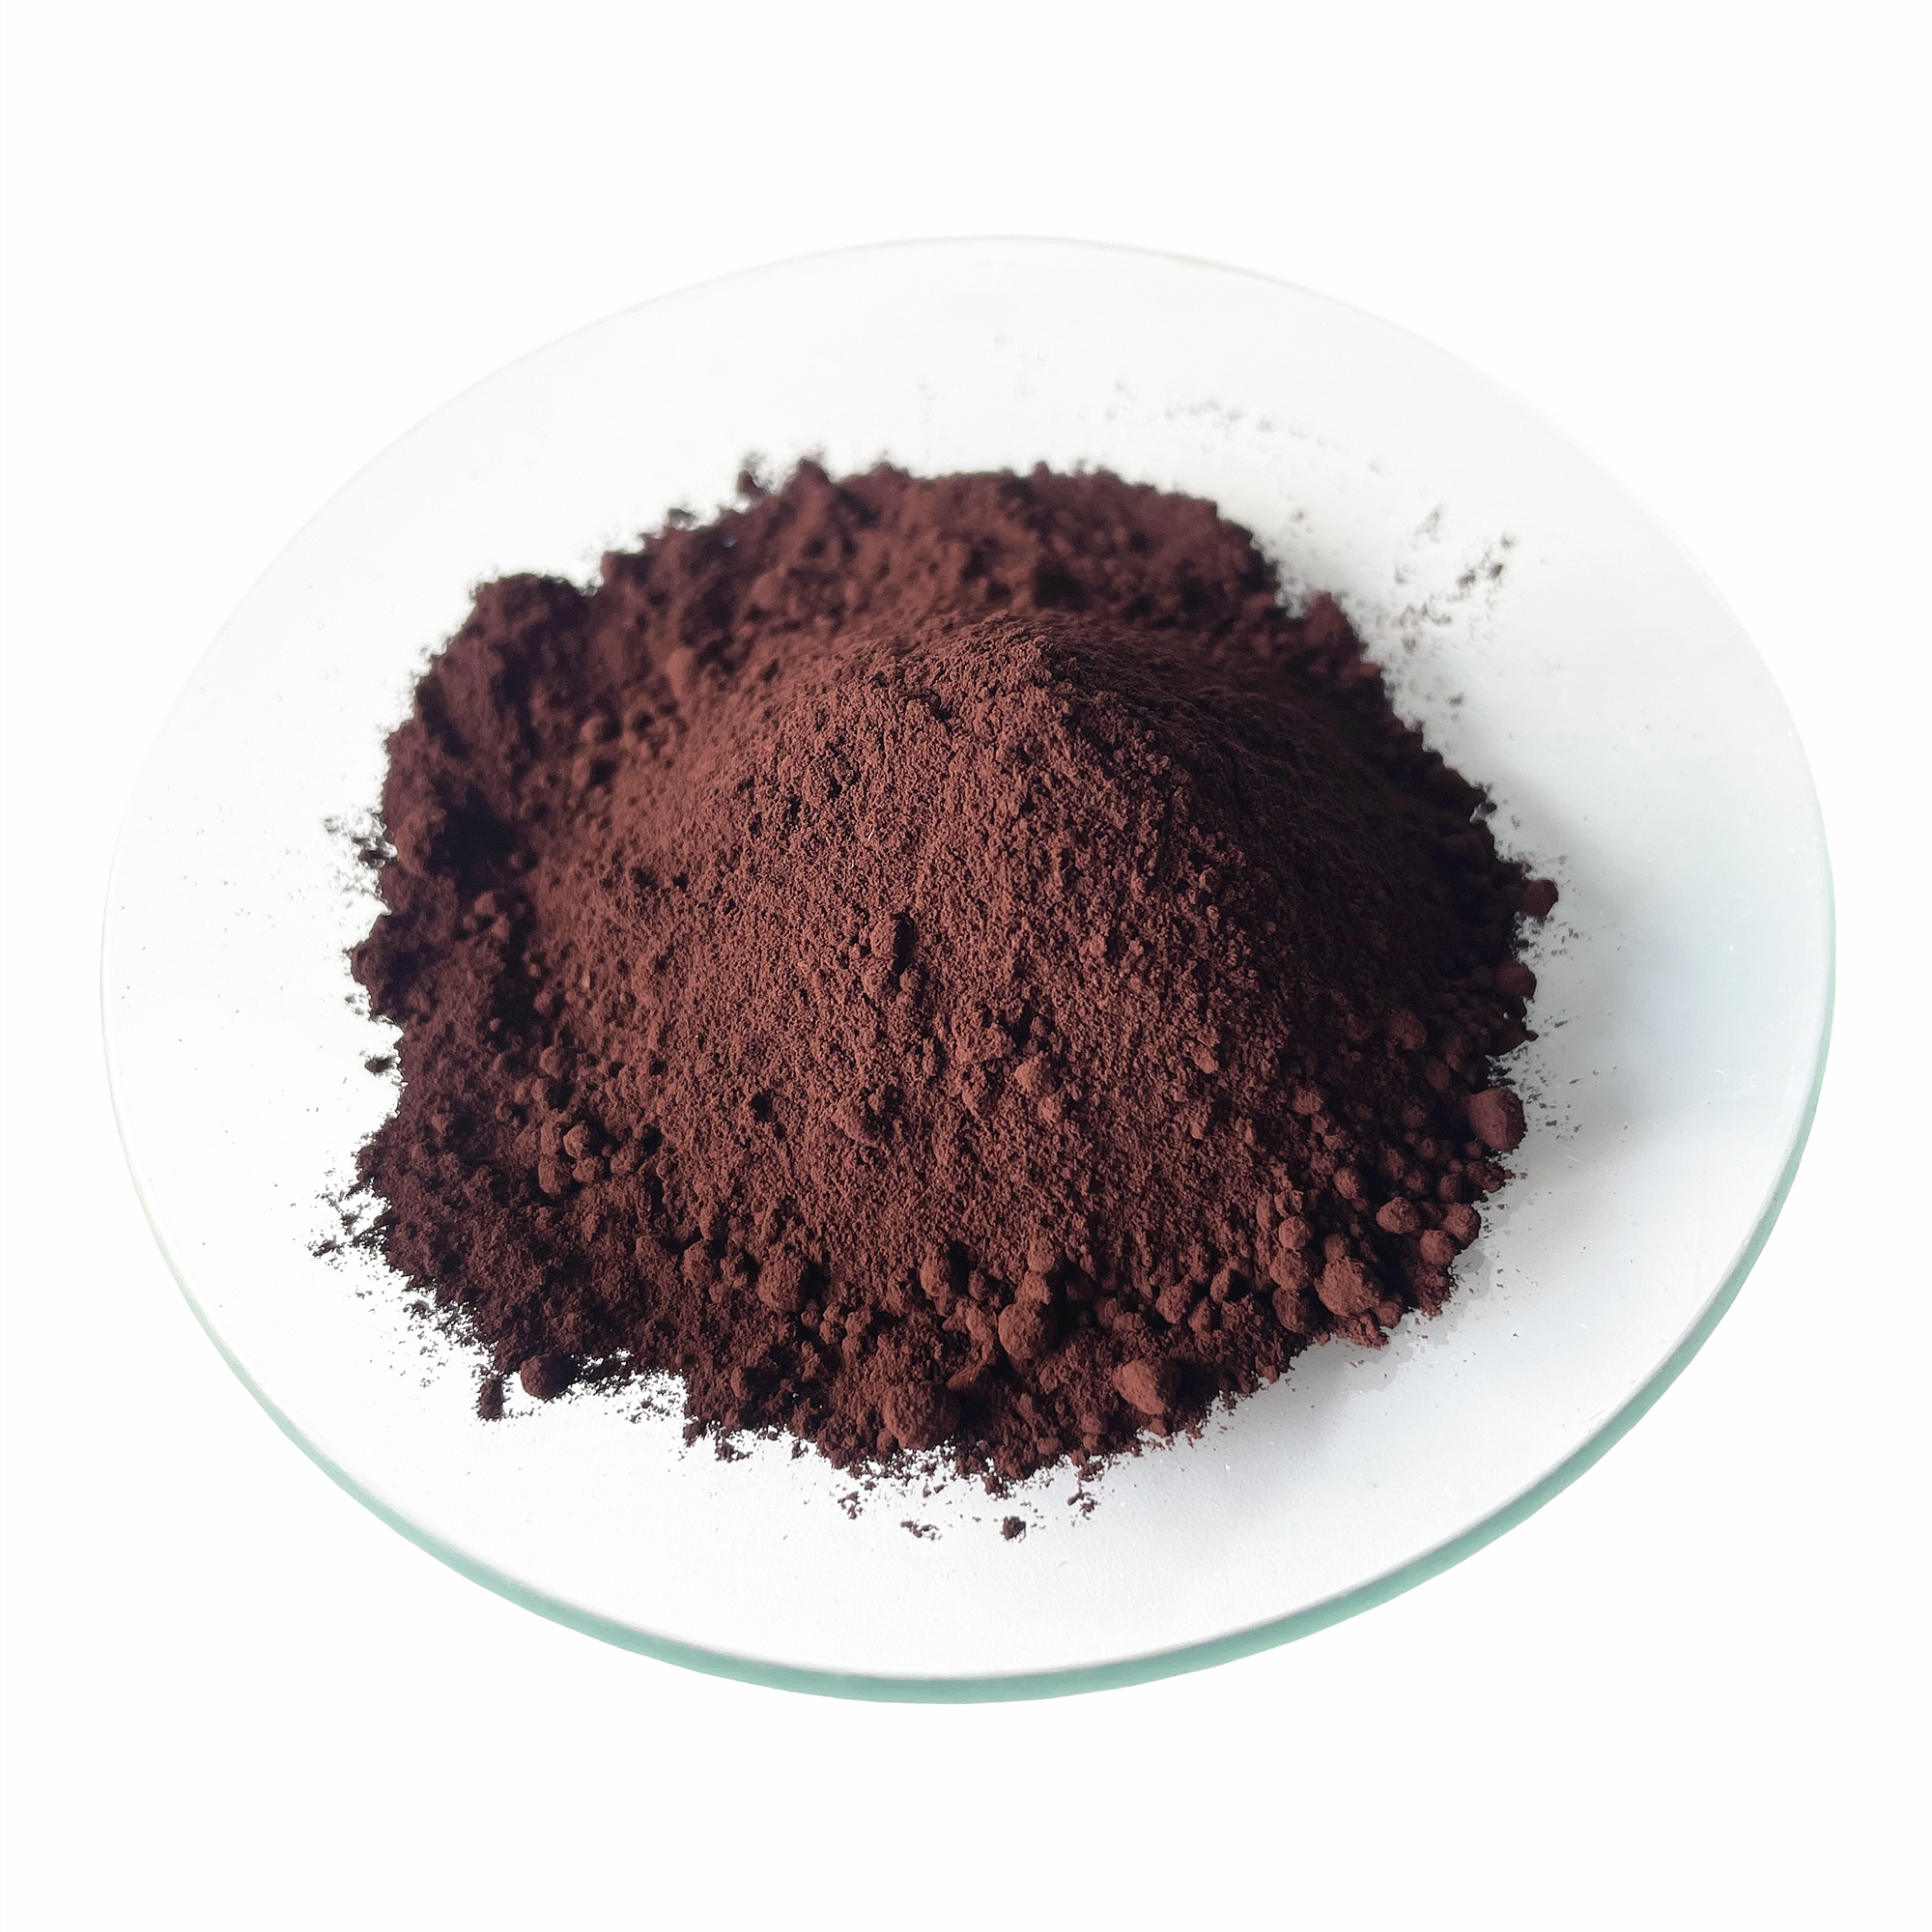 Óxido de ferro industrial Brown 686 do pigmento do cimento Fe2o3 da pureza alta para o tijolo